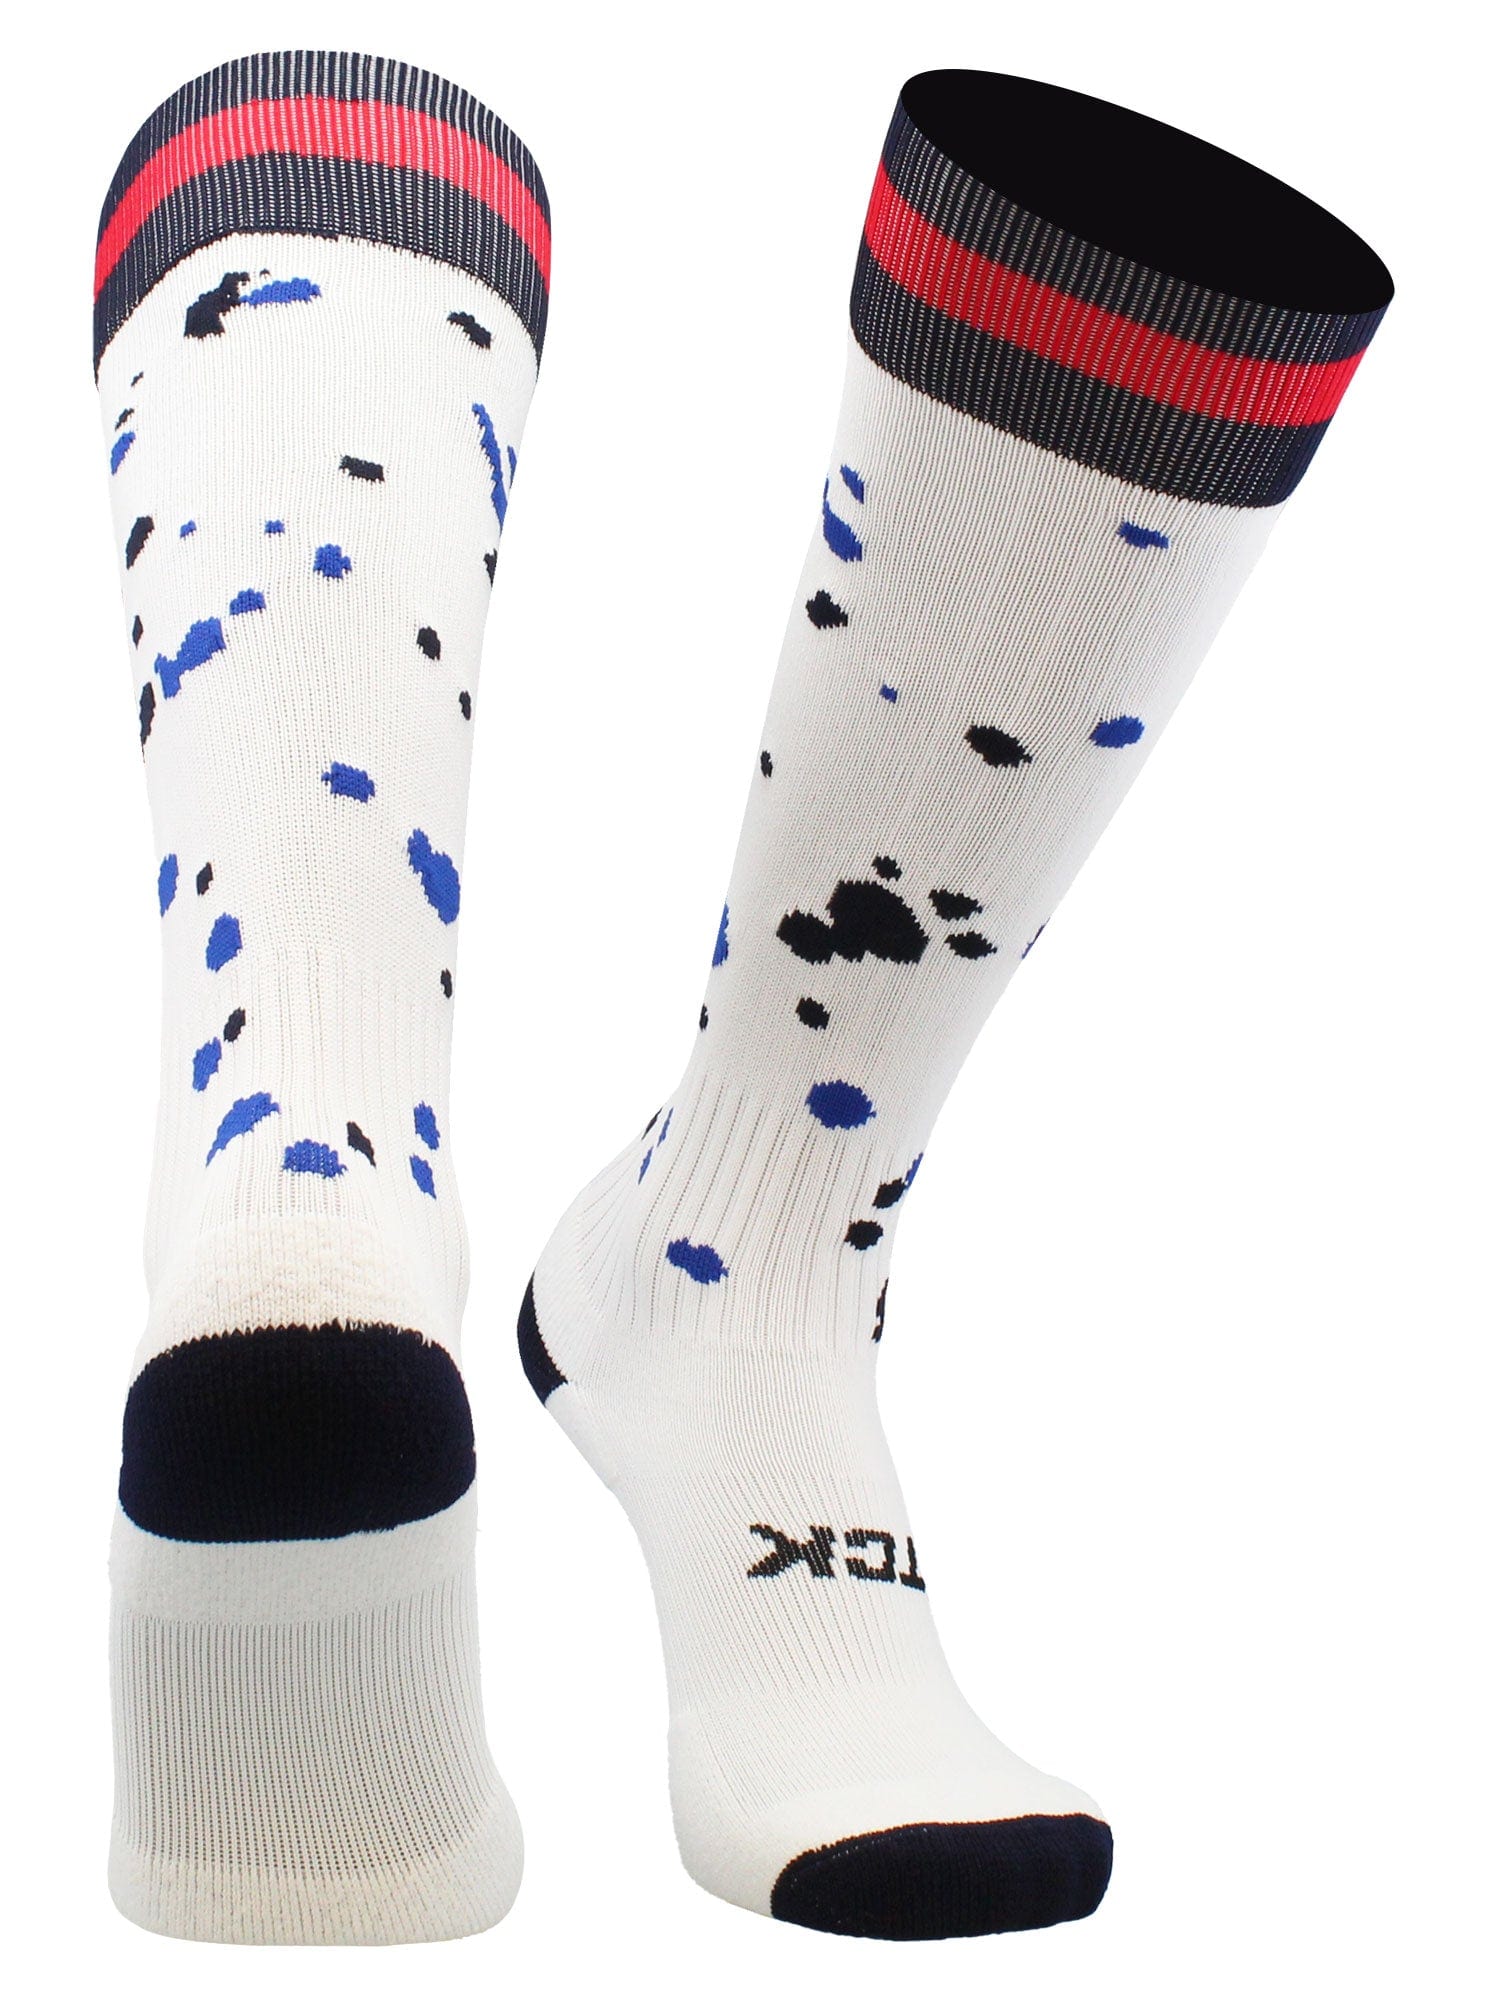 USA Soccer Socks For Girls & Boys, Paint Splatter Design